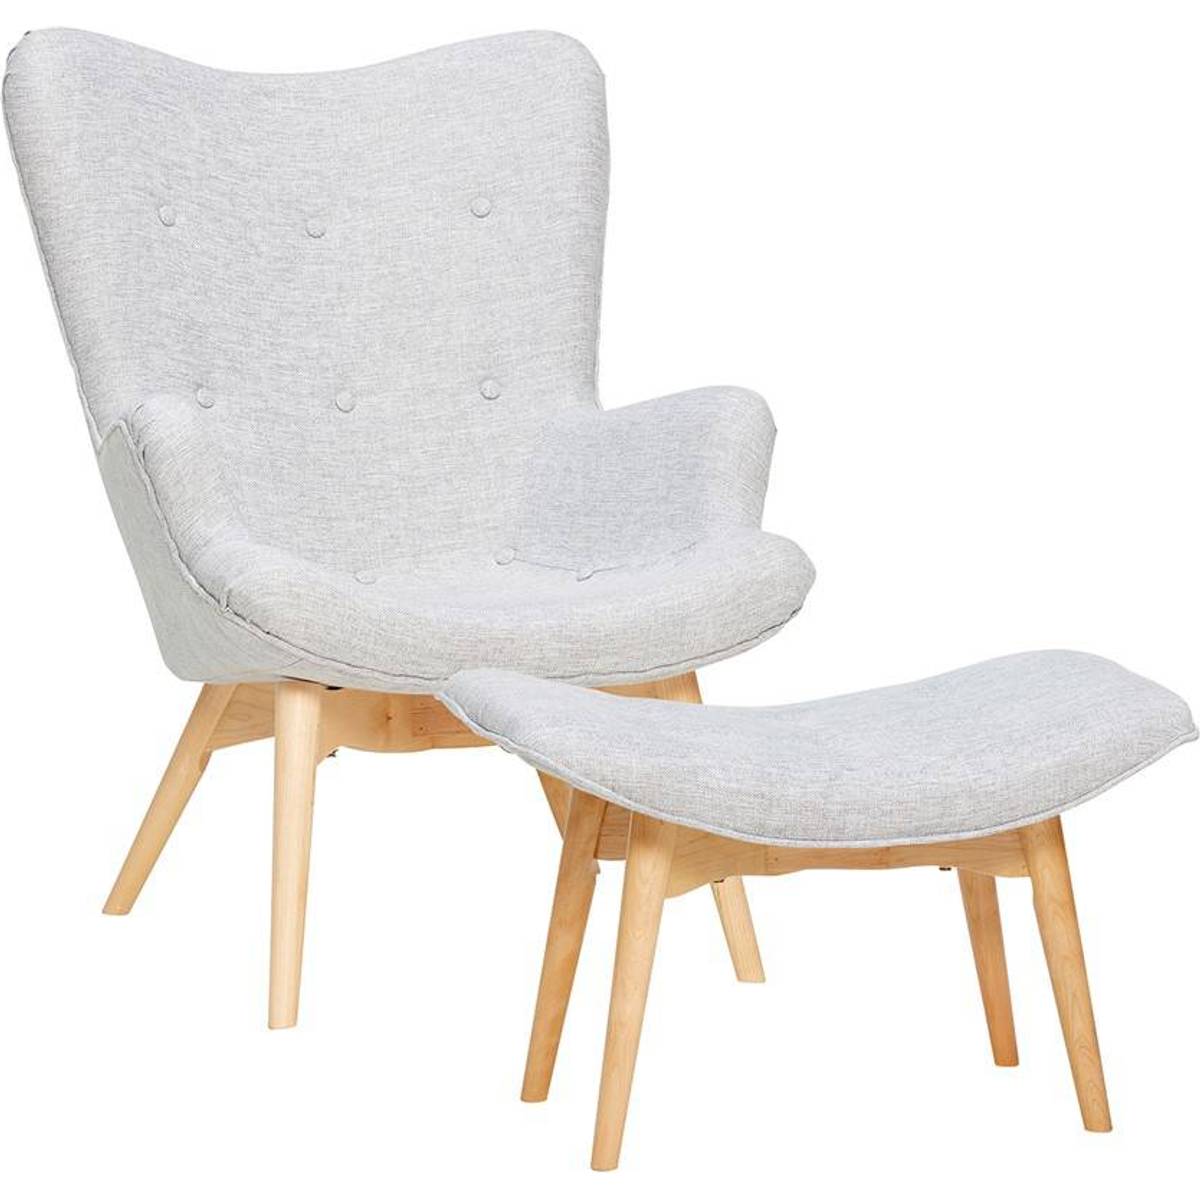 Lænestol med skammel møbler • Find billigste pris hos PriceRunner nu »